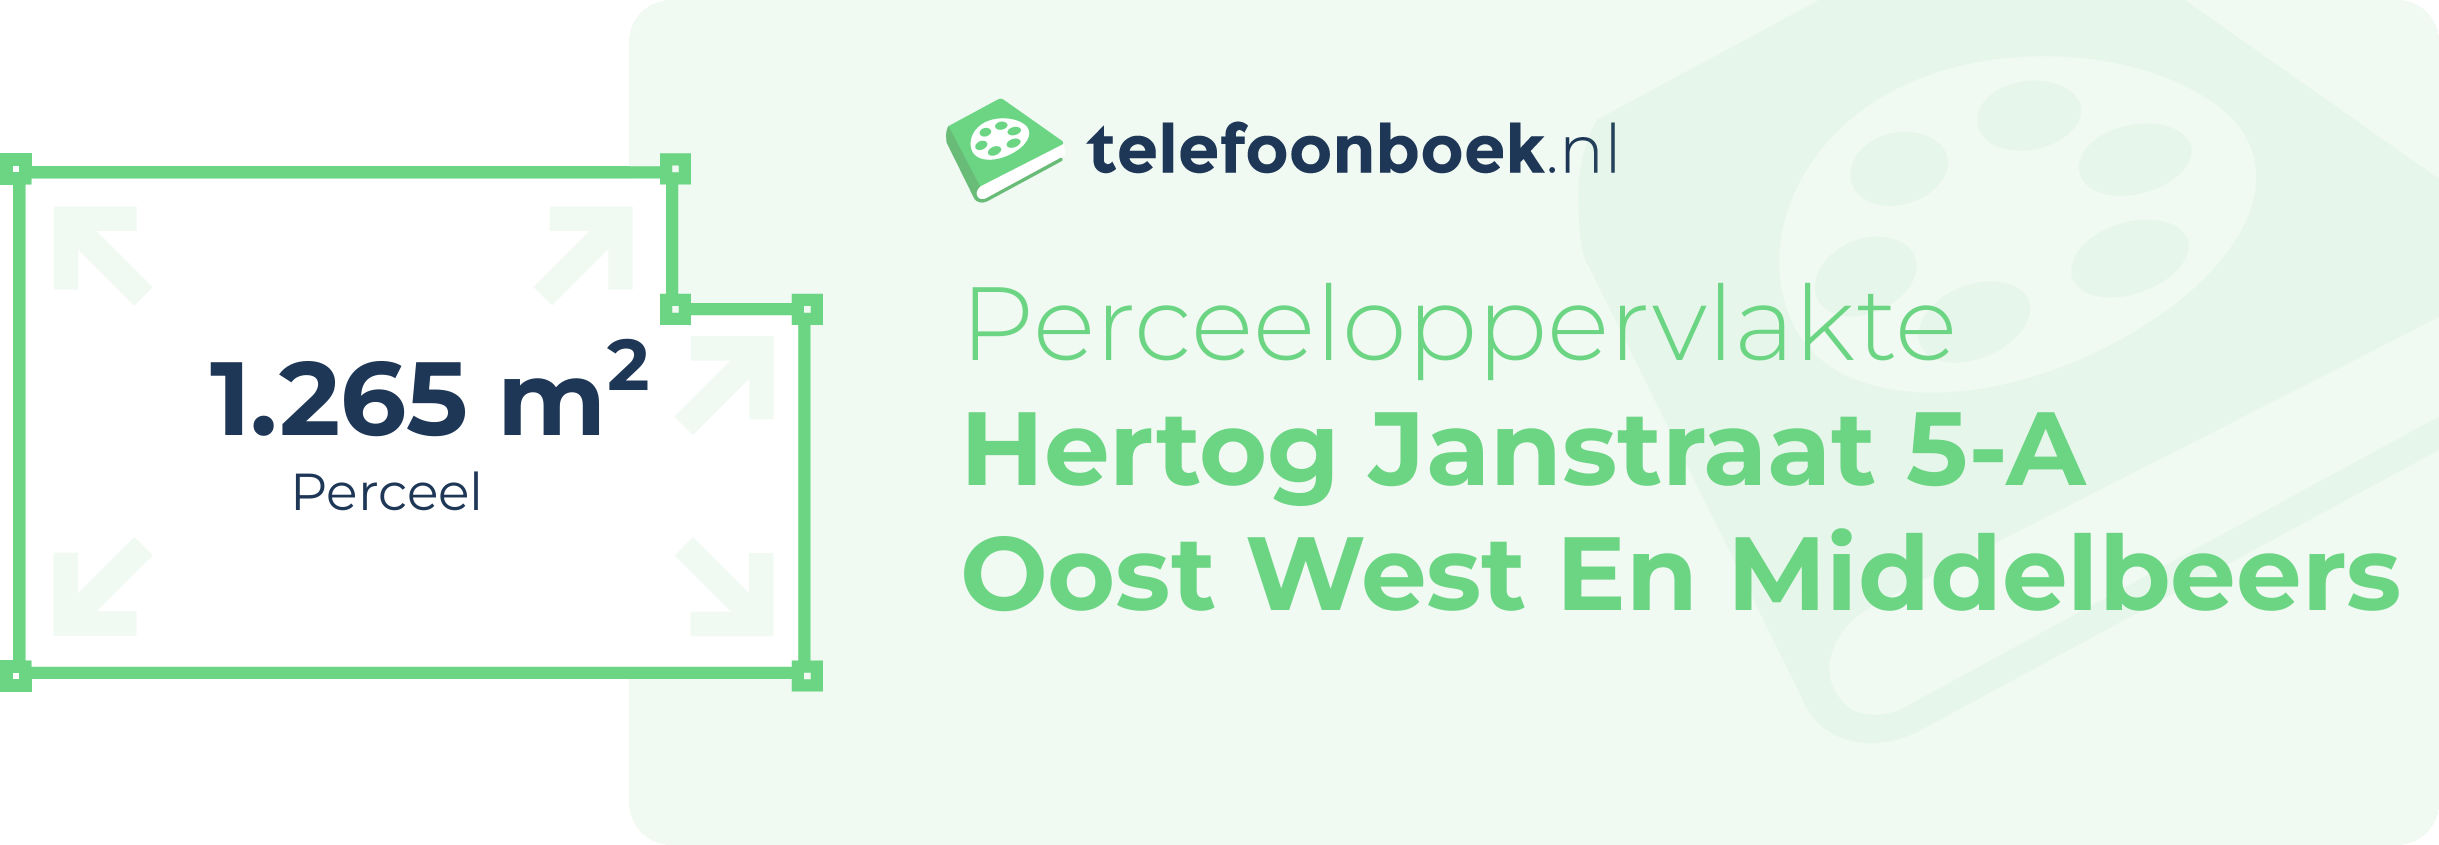 Perceeloppervlakte Hertog Janstraat 5-A Oost West En Middelbeers